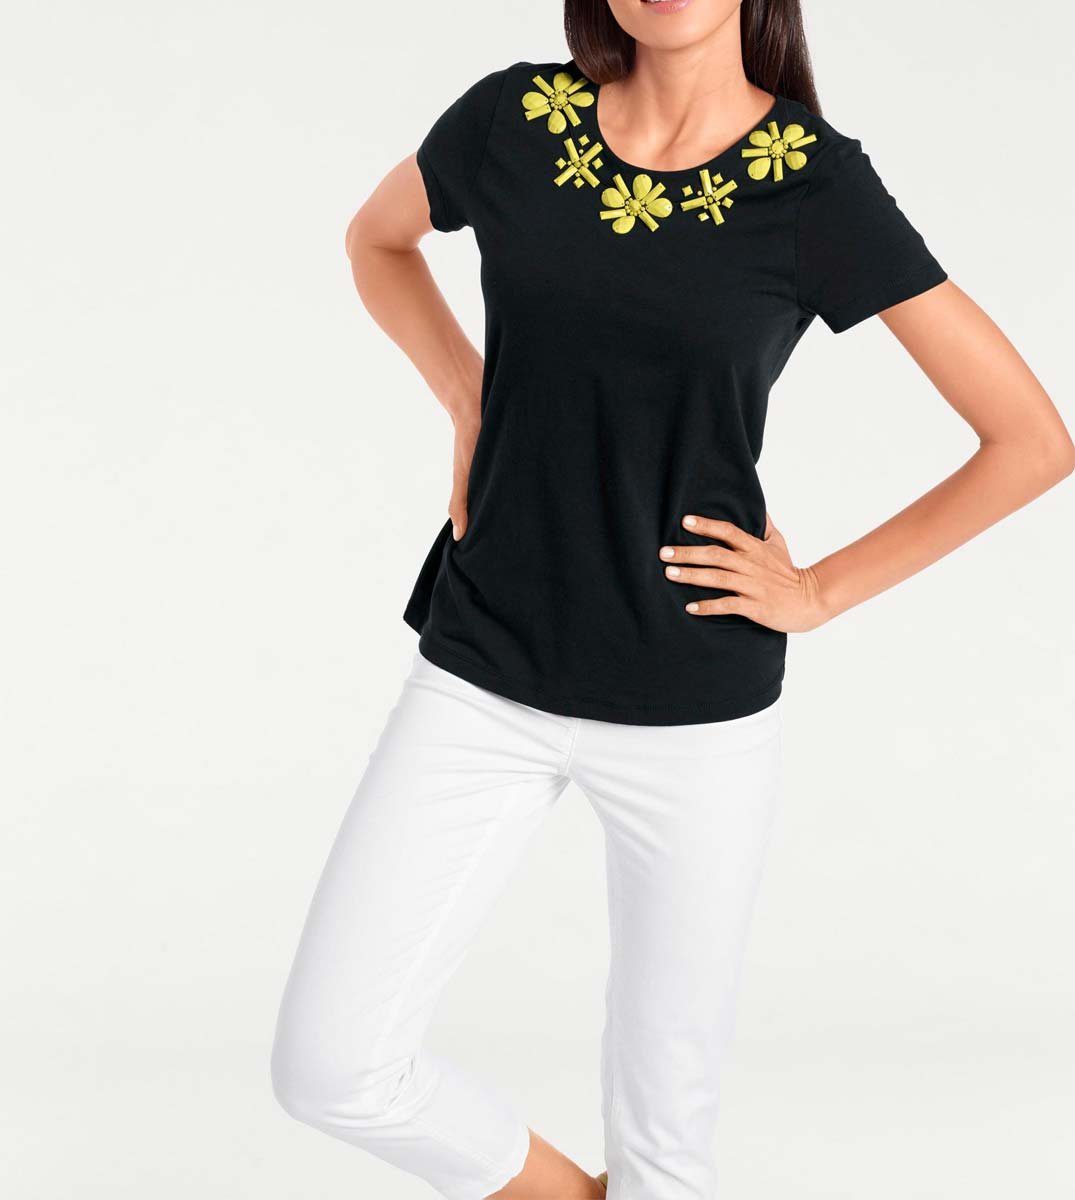 Brooke Ashley by Brooke Designer-Shirt, Rundhalsshirt Damen heine Ashley schwarz-gelb